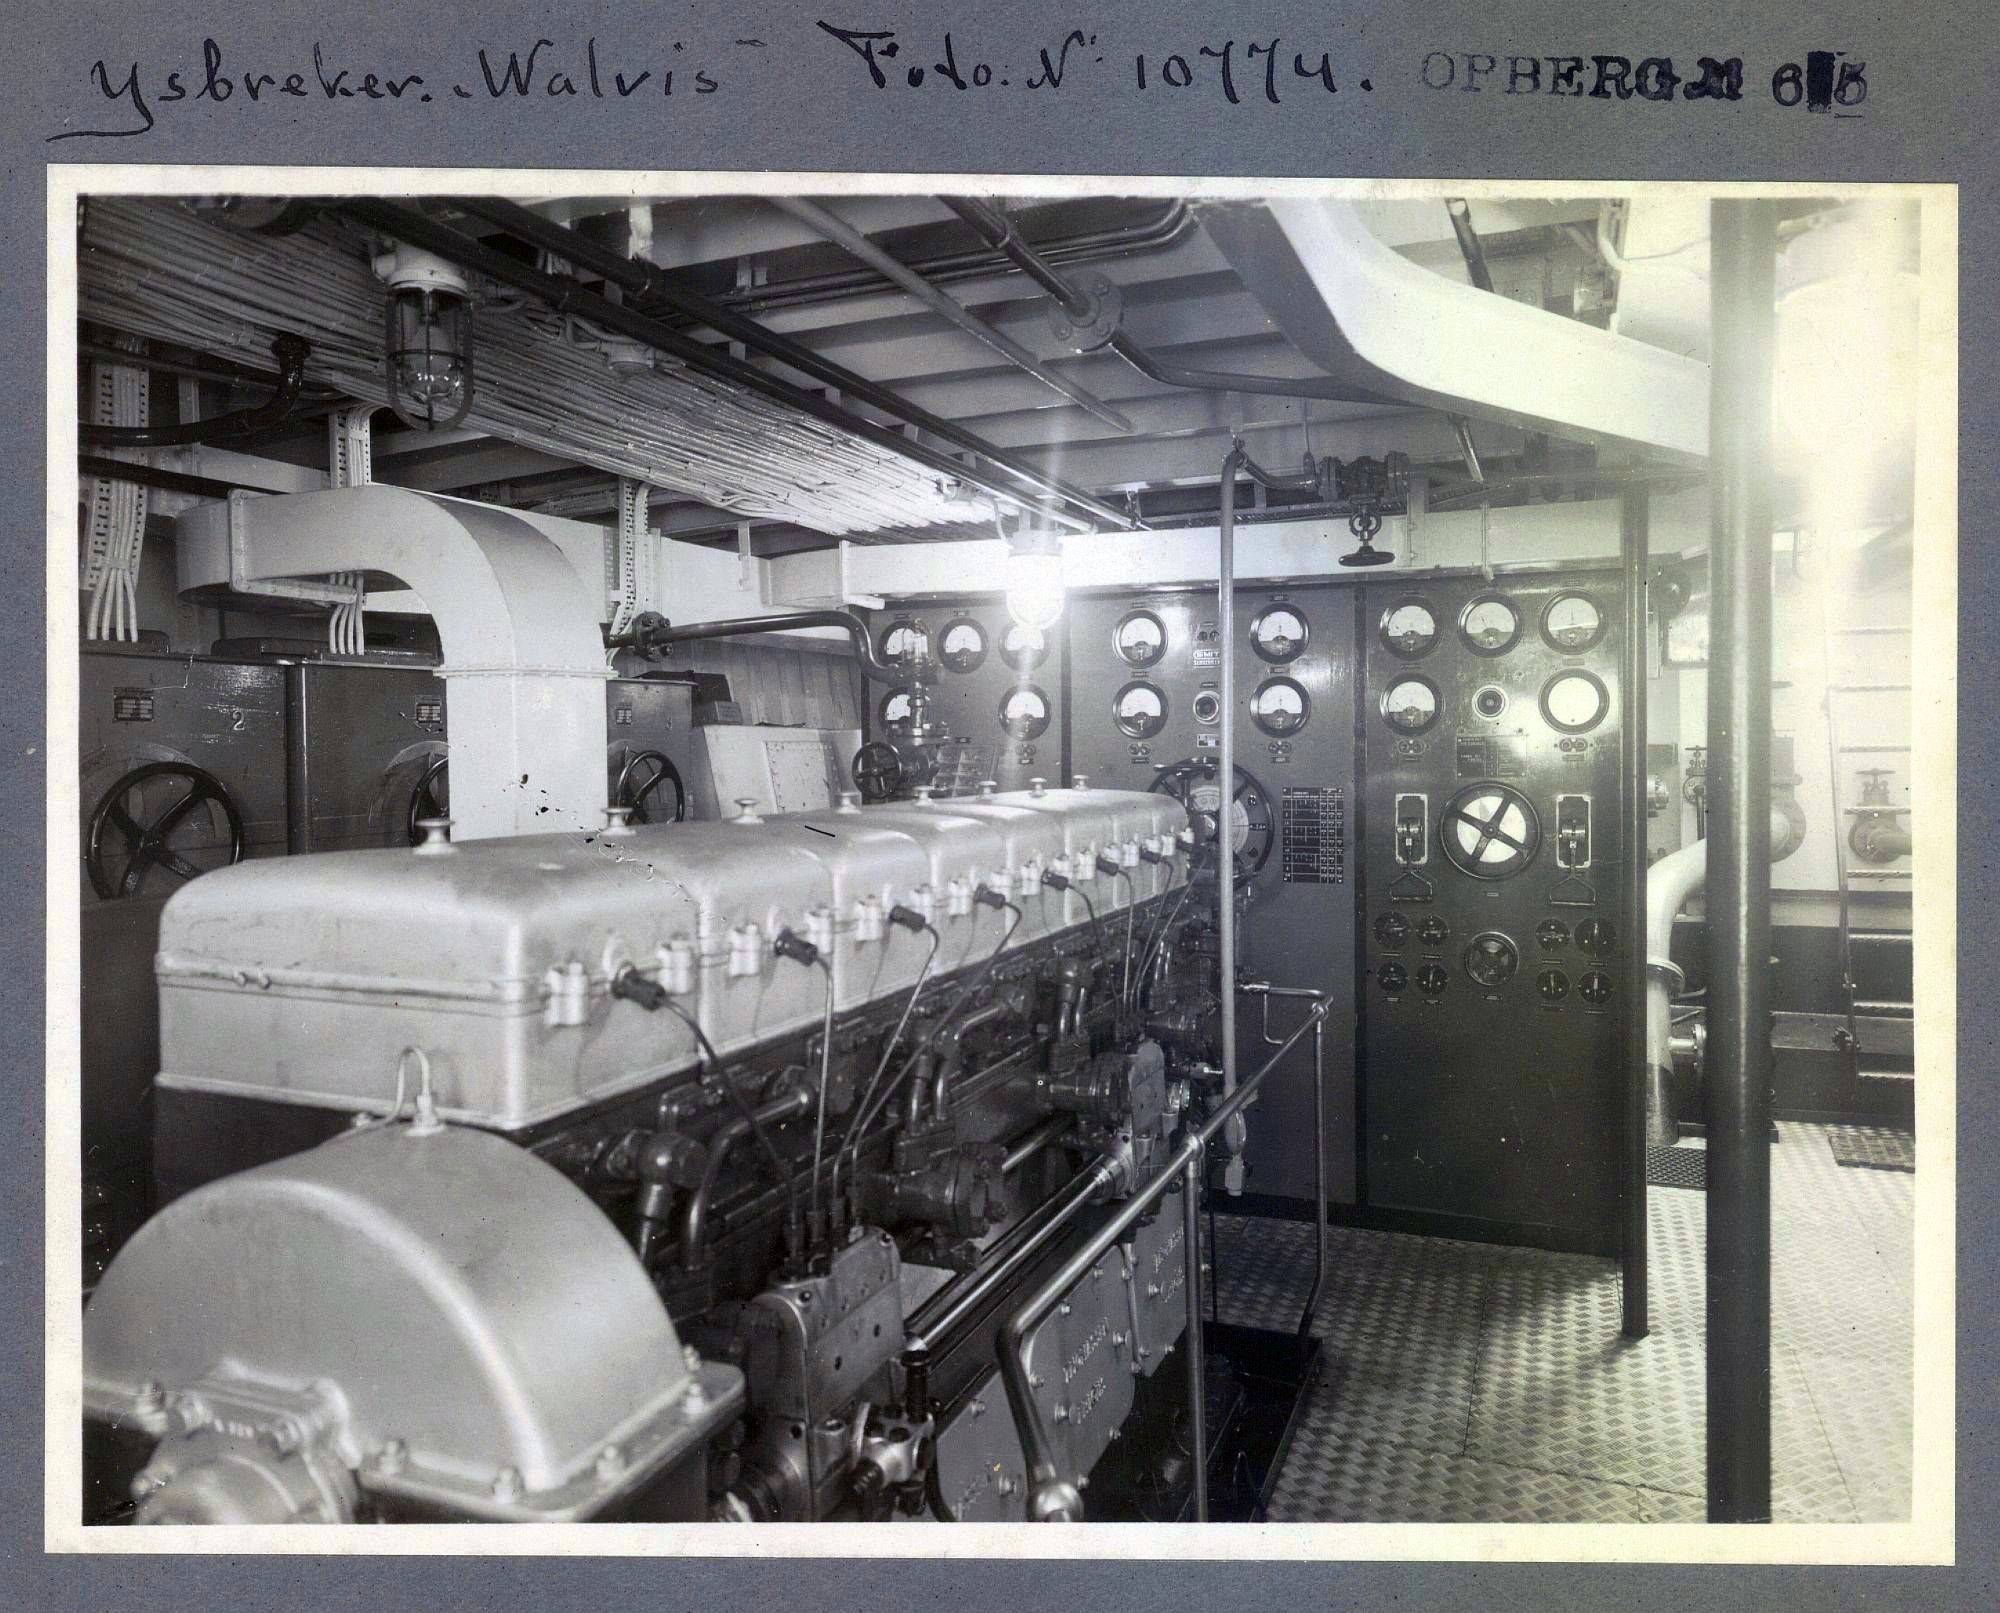 IJsbreker Walvis - originele foto uit het Smit Slikkerveer archief (1949)